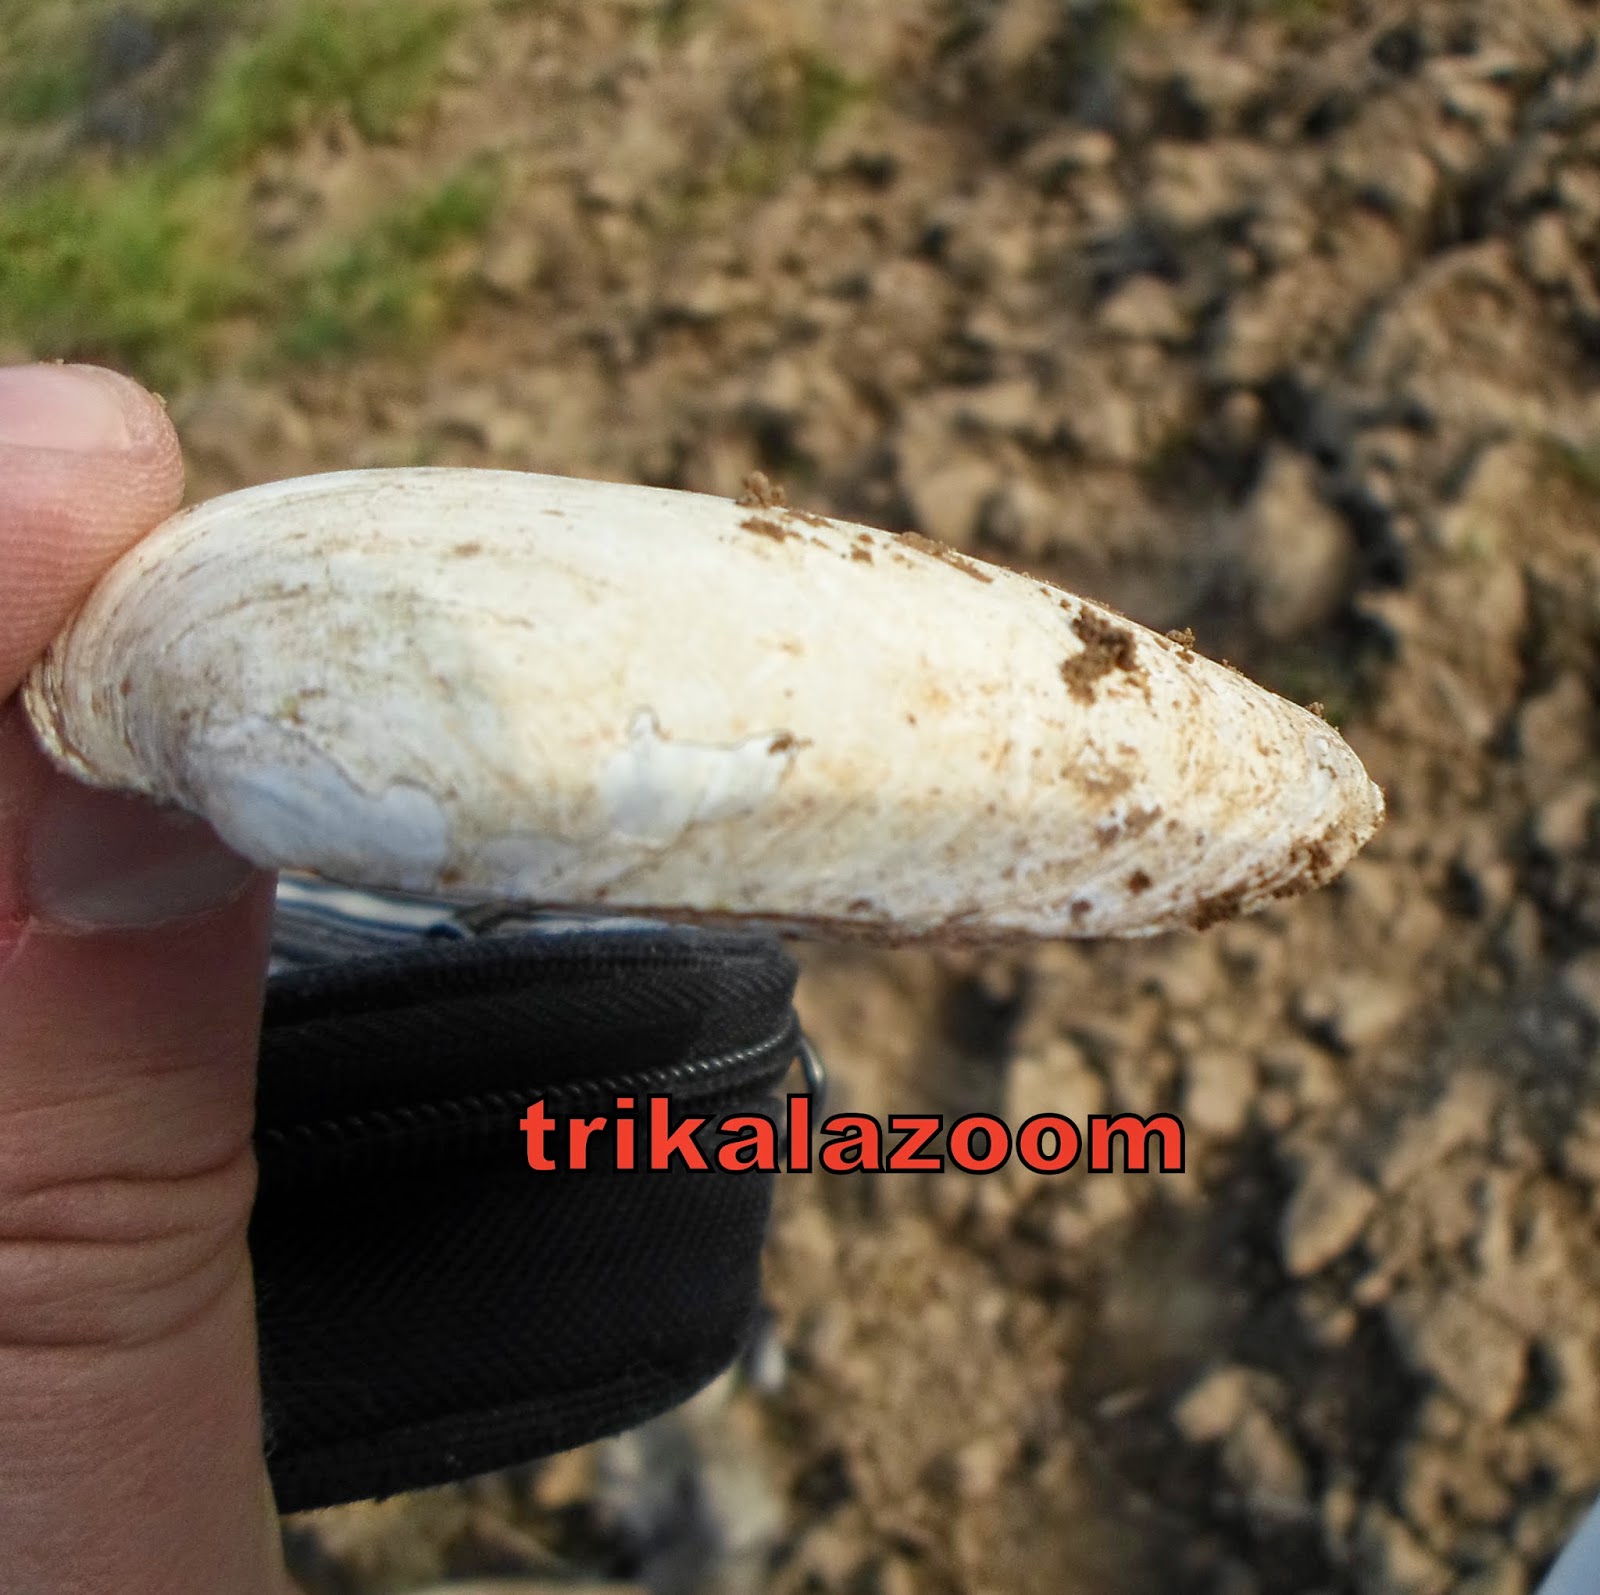 Νέο προϊστορικό κοχύλι βρέθηκε σε χωράφι των Τρικάλων - Φωτογραφία 3